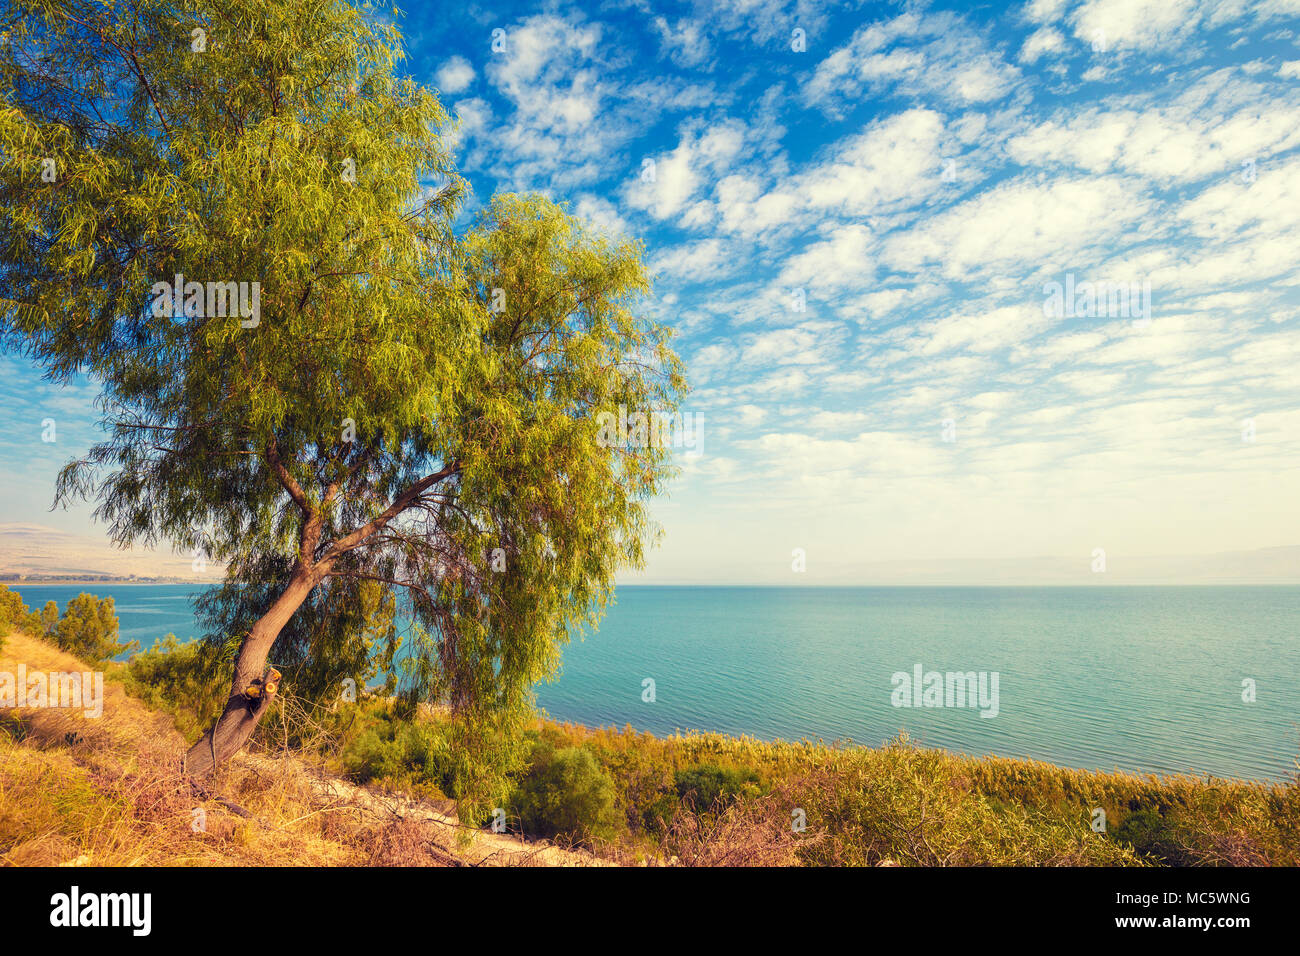 Paysage avec arbre seul sur la rive et ciel bleu avec des nuages. La belle nature d'Israël. La mer de Galilée Banque D'Images